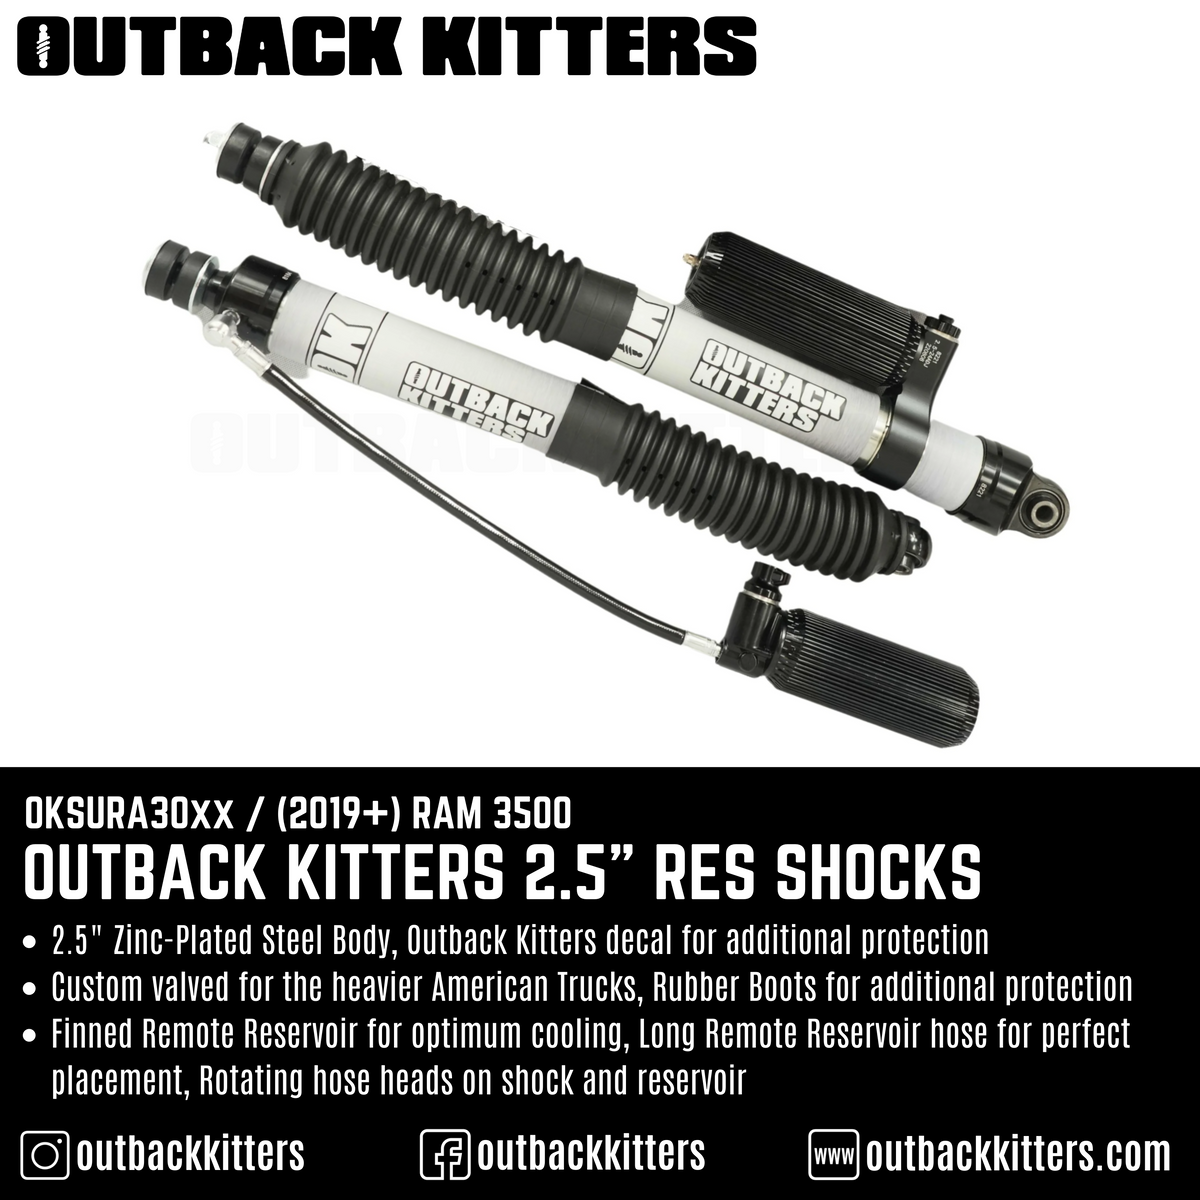 Outback Kitters 2.5" Reservoir Shocks for Ram 3500 (2019+) - Outback Kitters